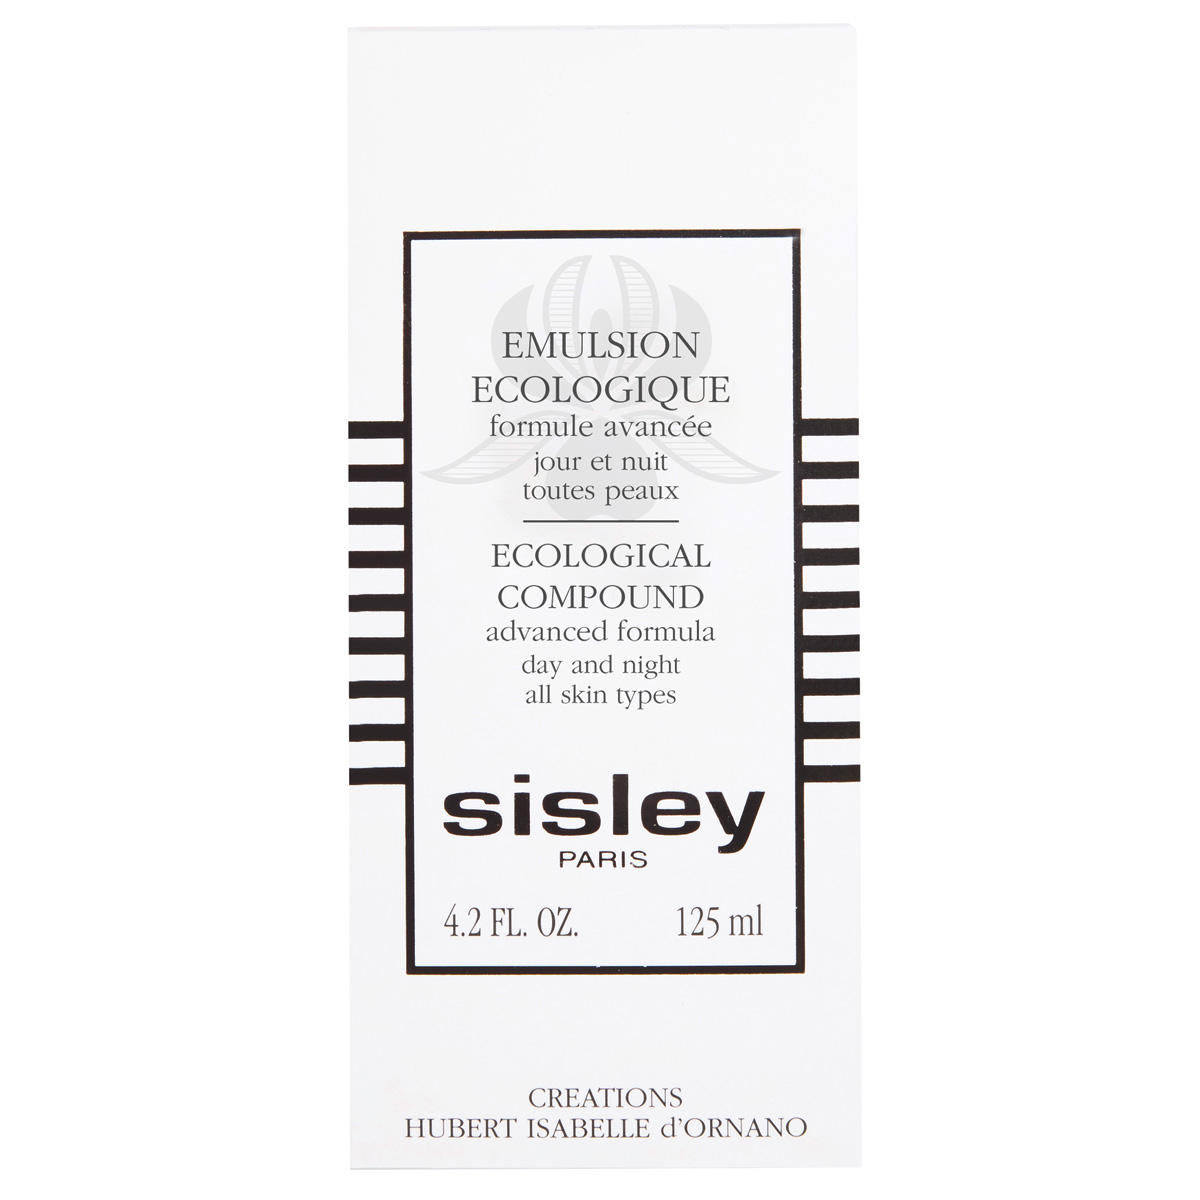 Sisley Paris Emulsion Ecologique formule avancée 125 ml - 3